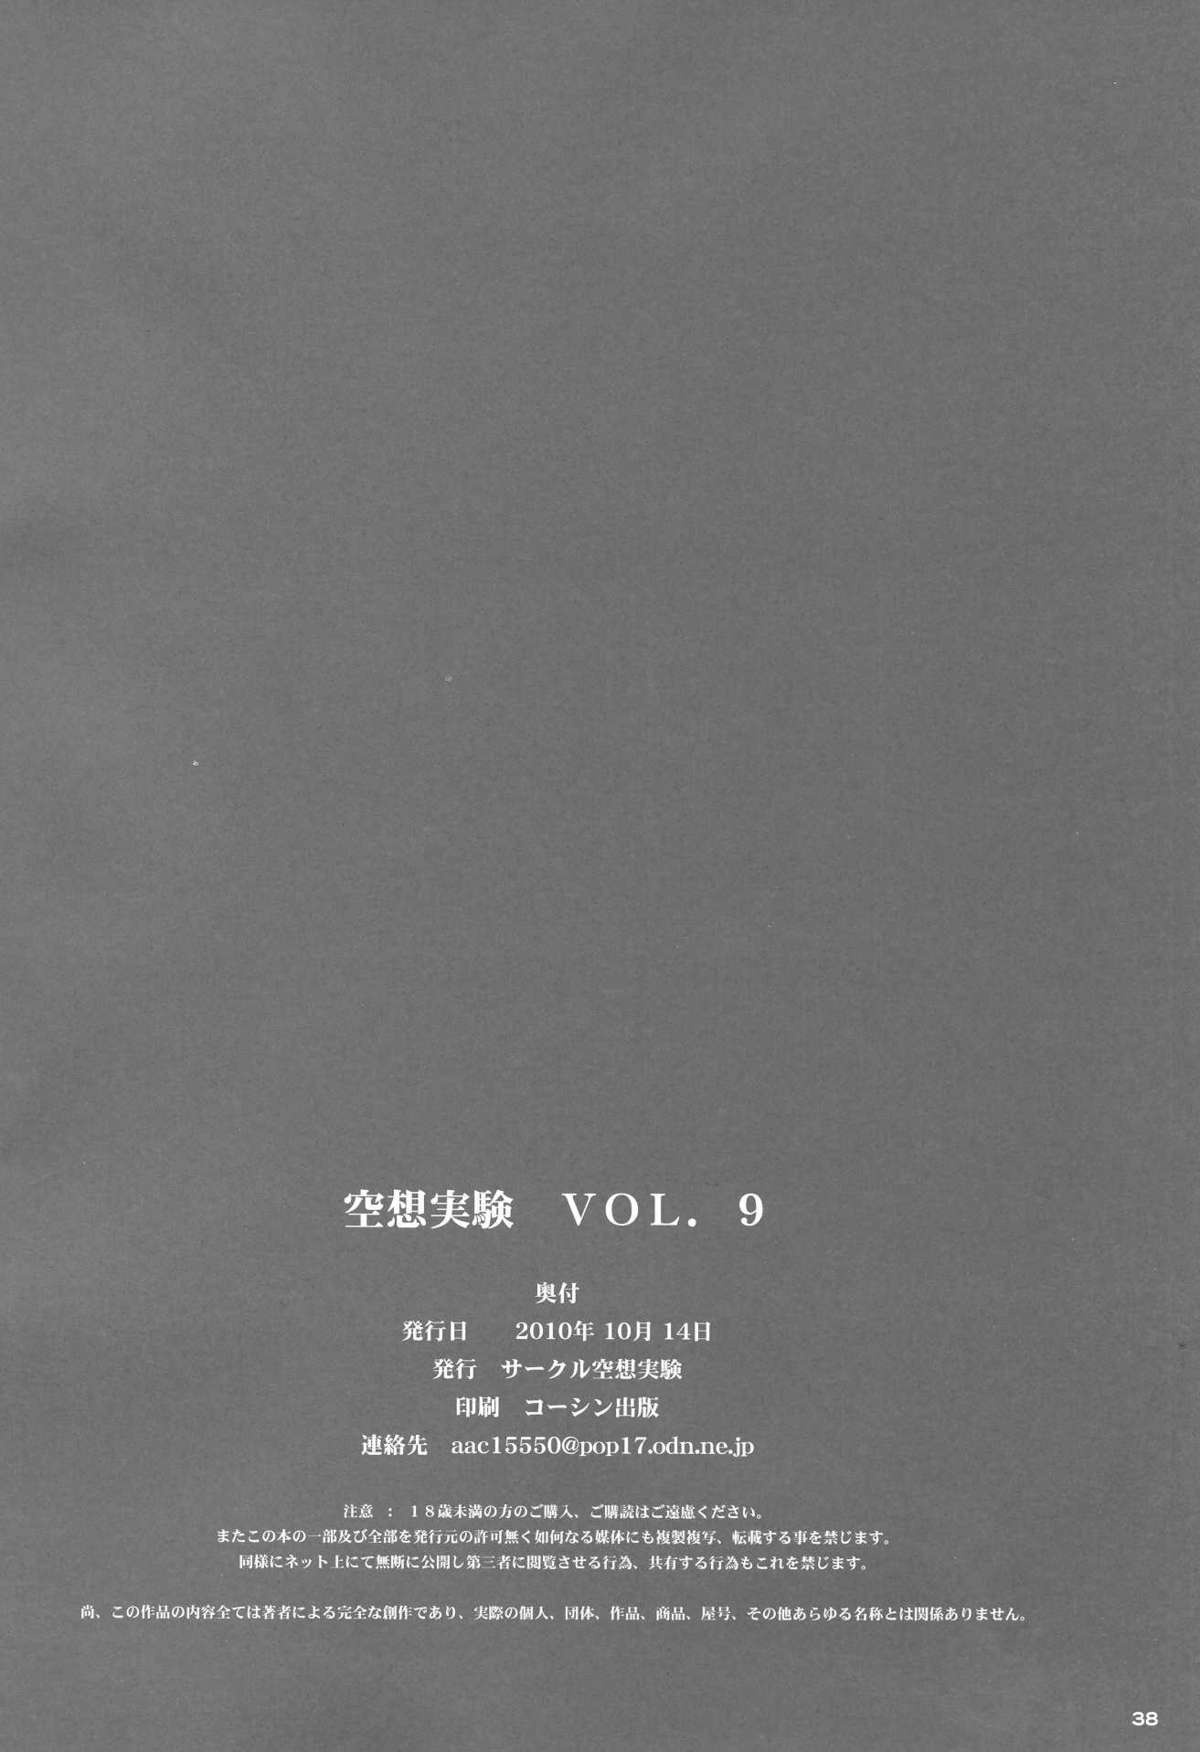 [サークル空想実験 (宗人)] 空想実験 vol.9 (ワンピース)